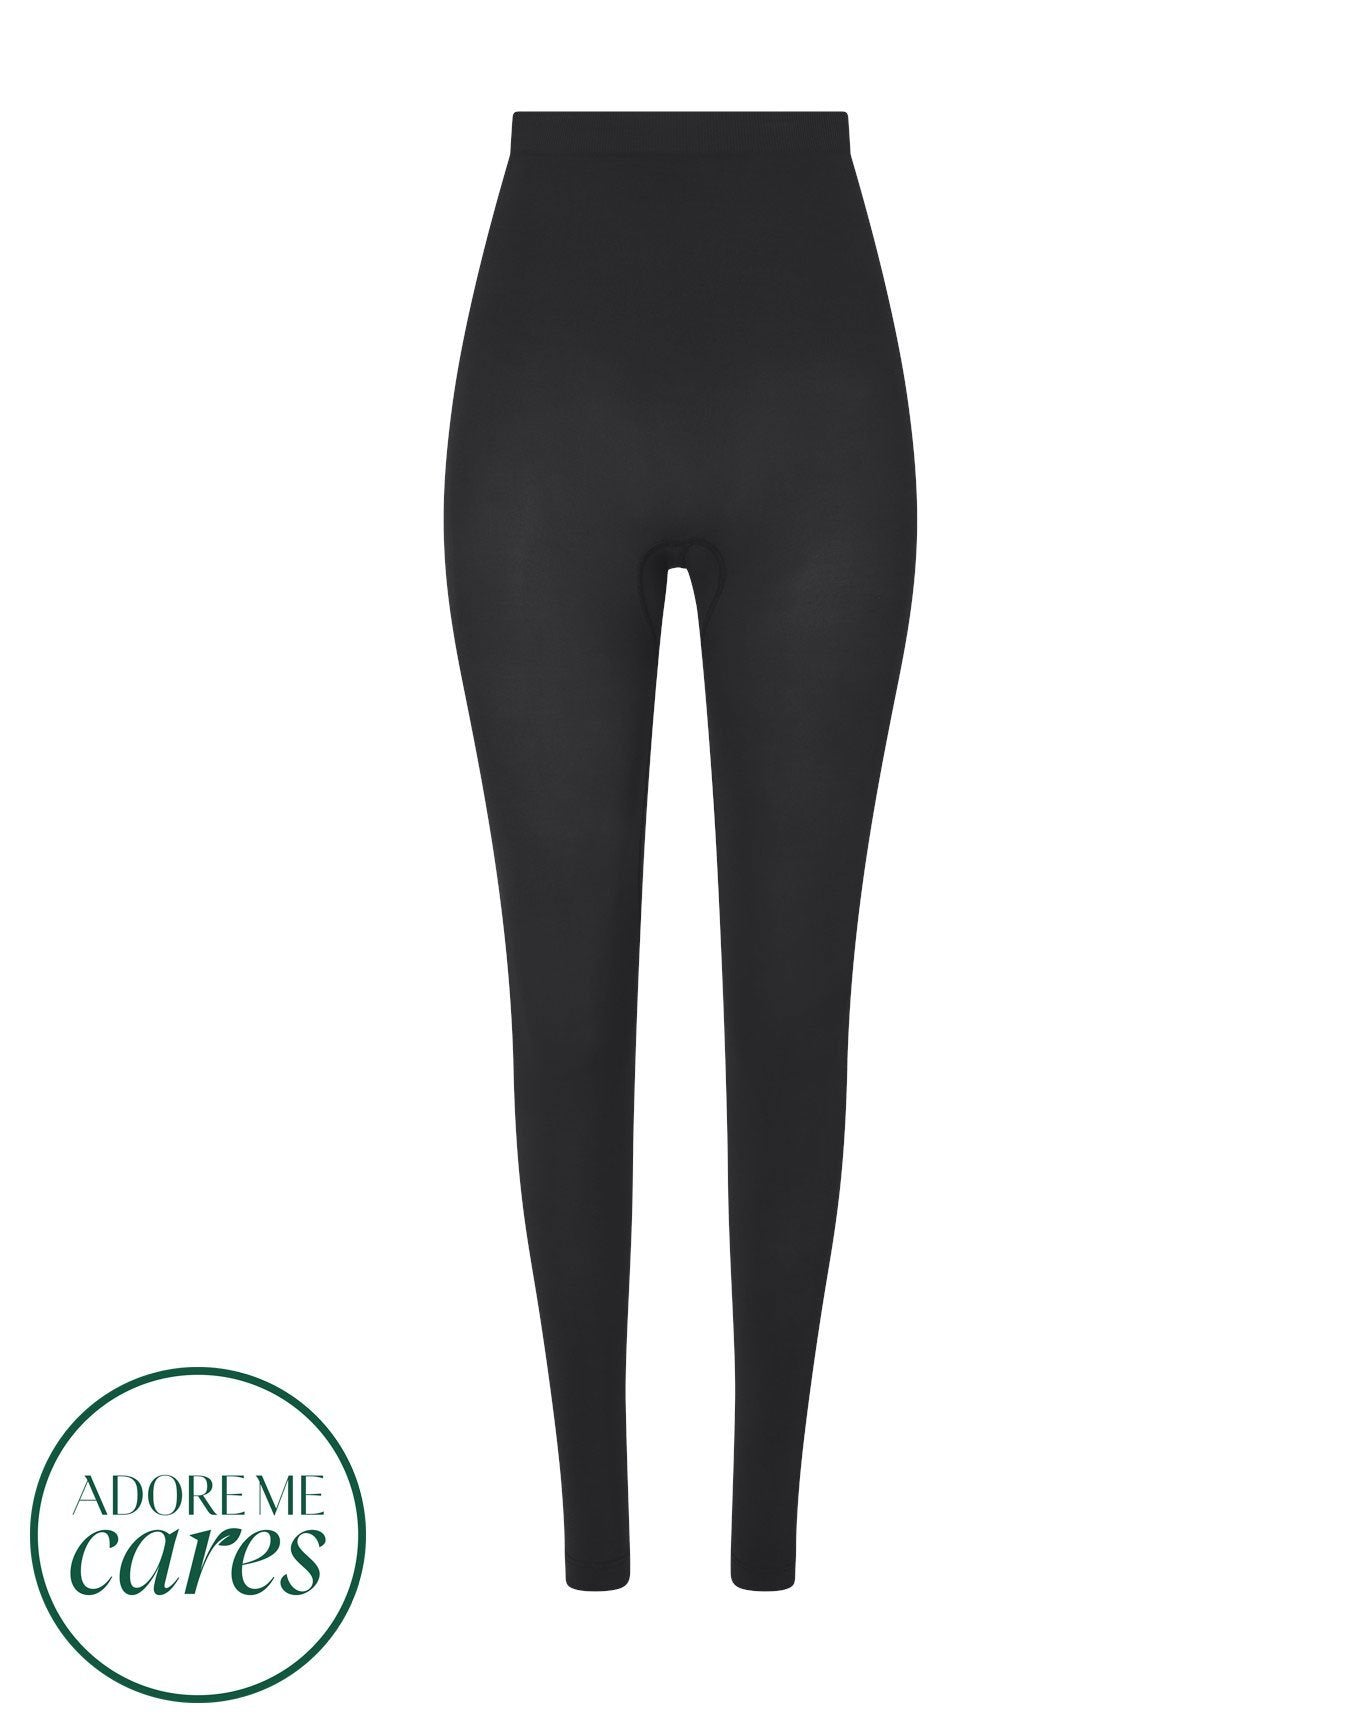 nueskin Lilya High-Compression Legging in color Jet Black and shape legging